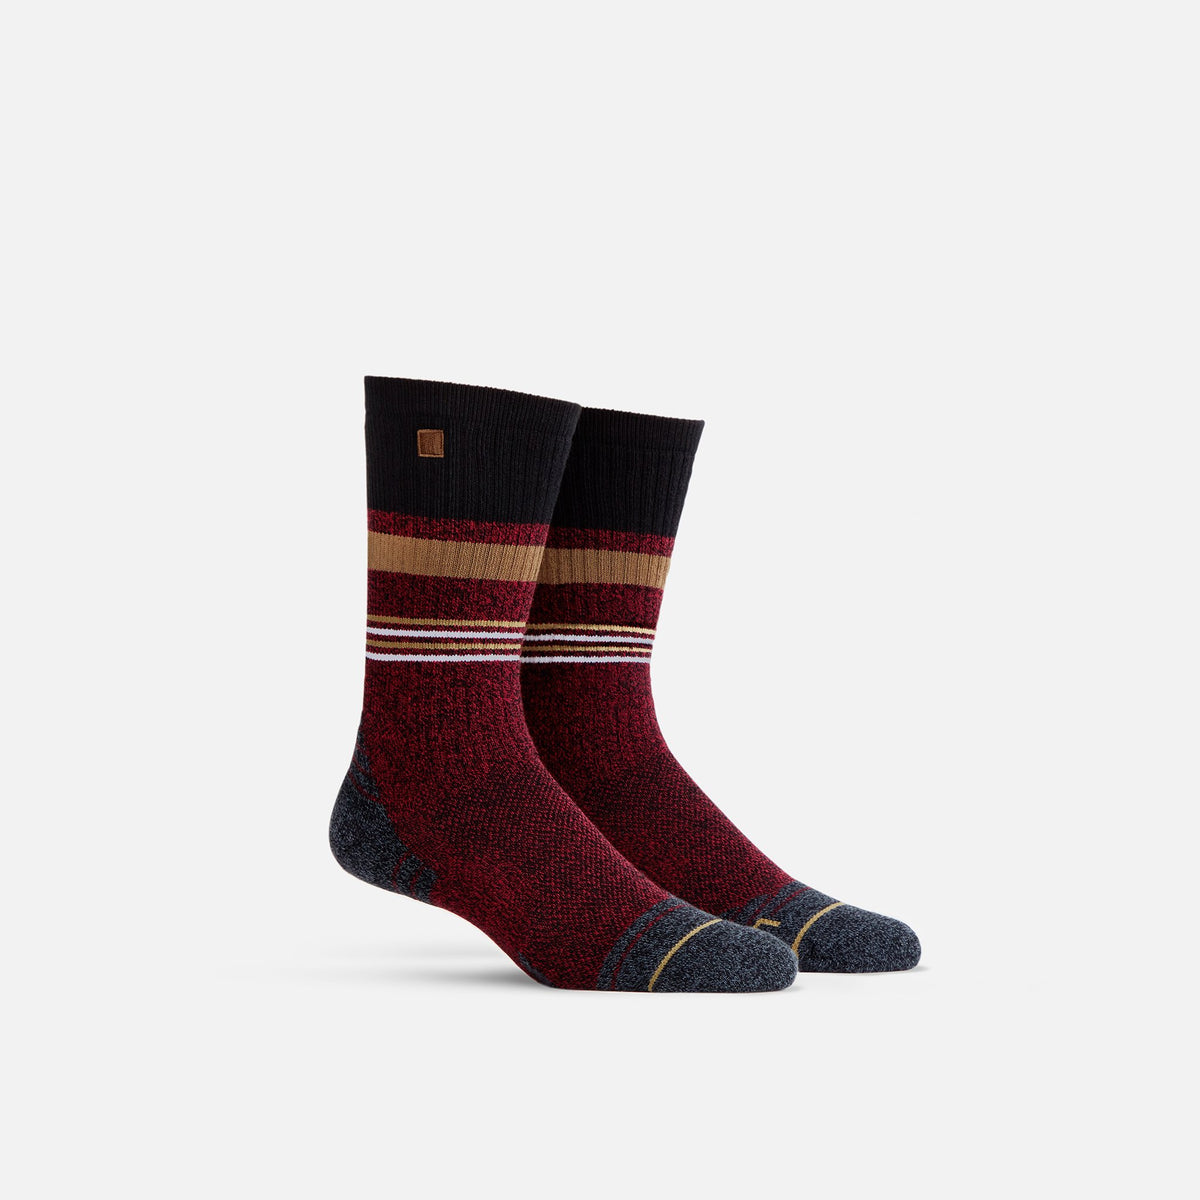 Simply Sock Yarn - Olive Tonal